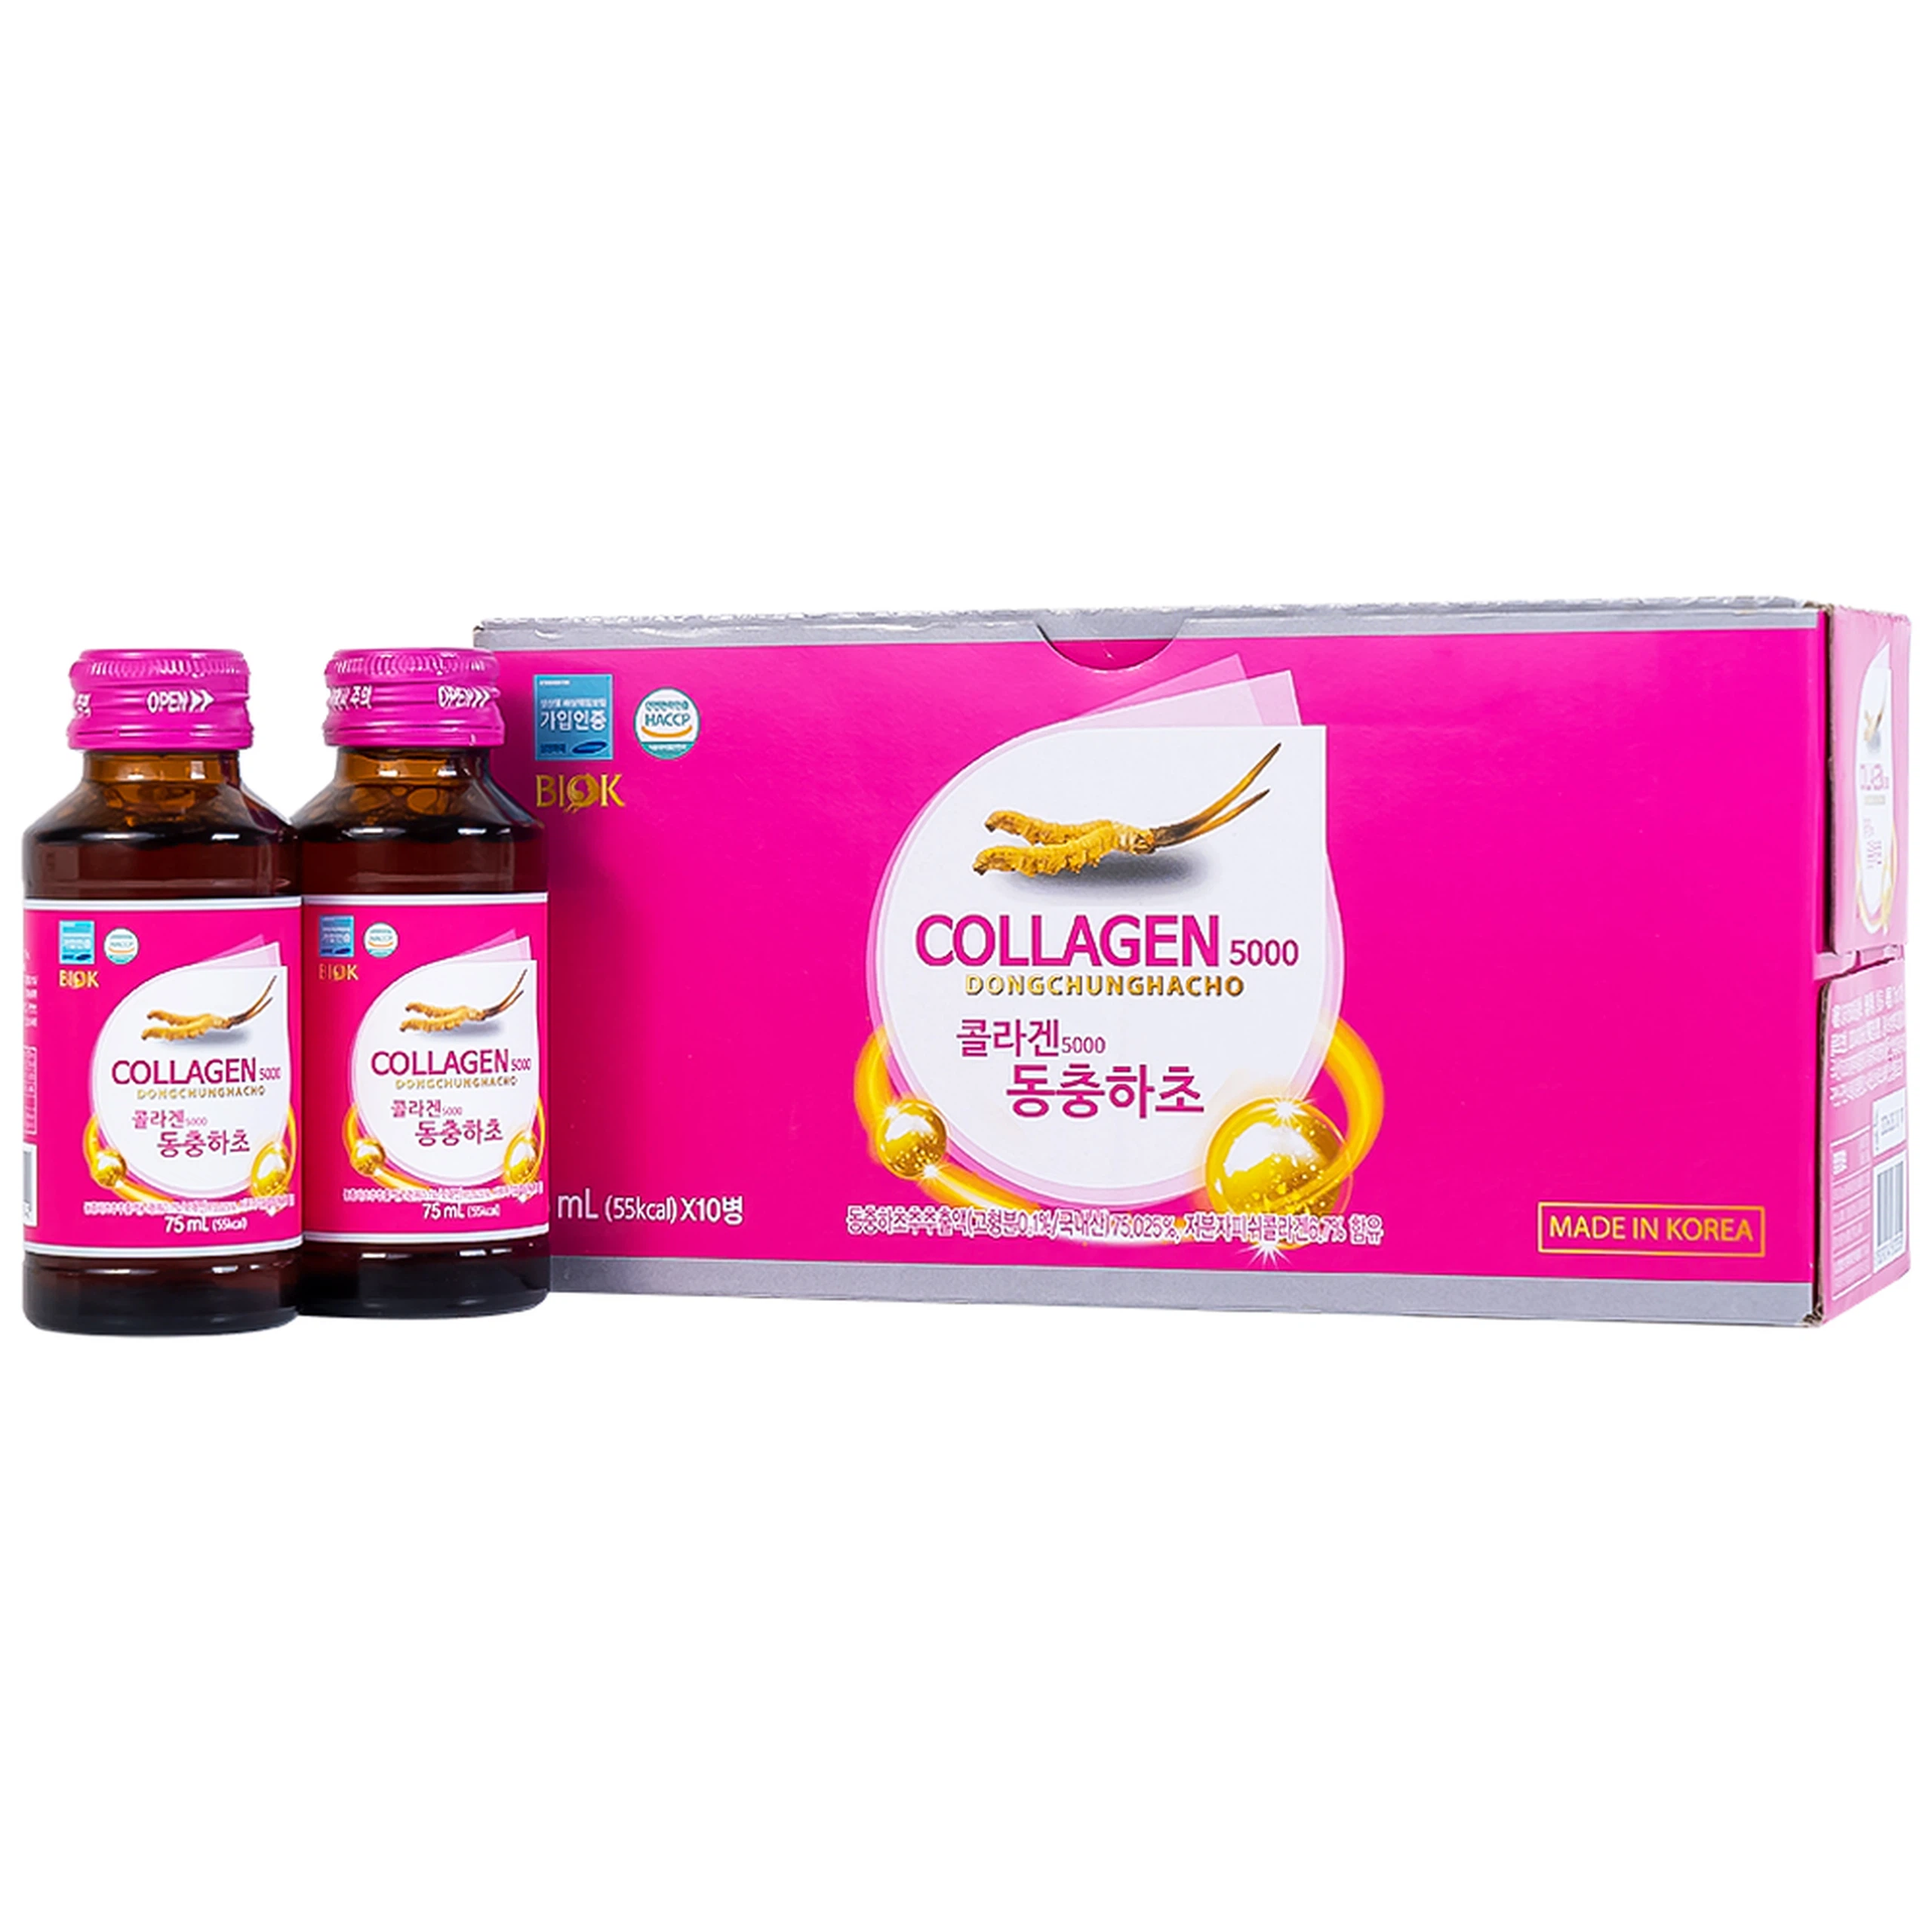 Nước Collagen5000 Đông Trùng Hạ Thảo Biok hỗ trợ ngăn ngừa quá trình lão hóa, tăng cường đề kháng (10 chai x 75ml)